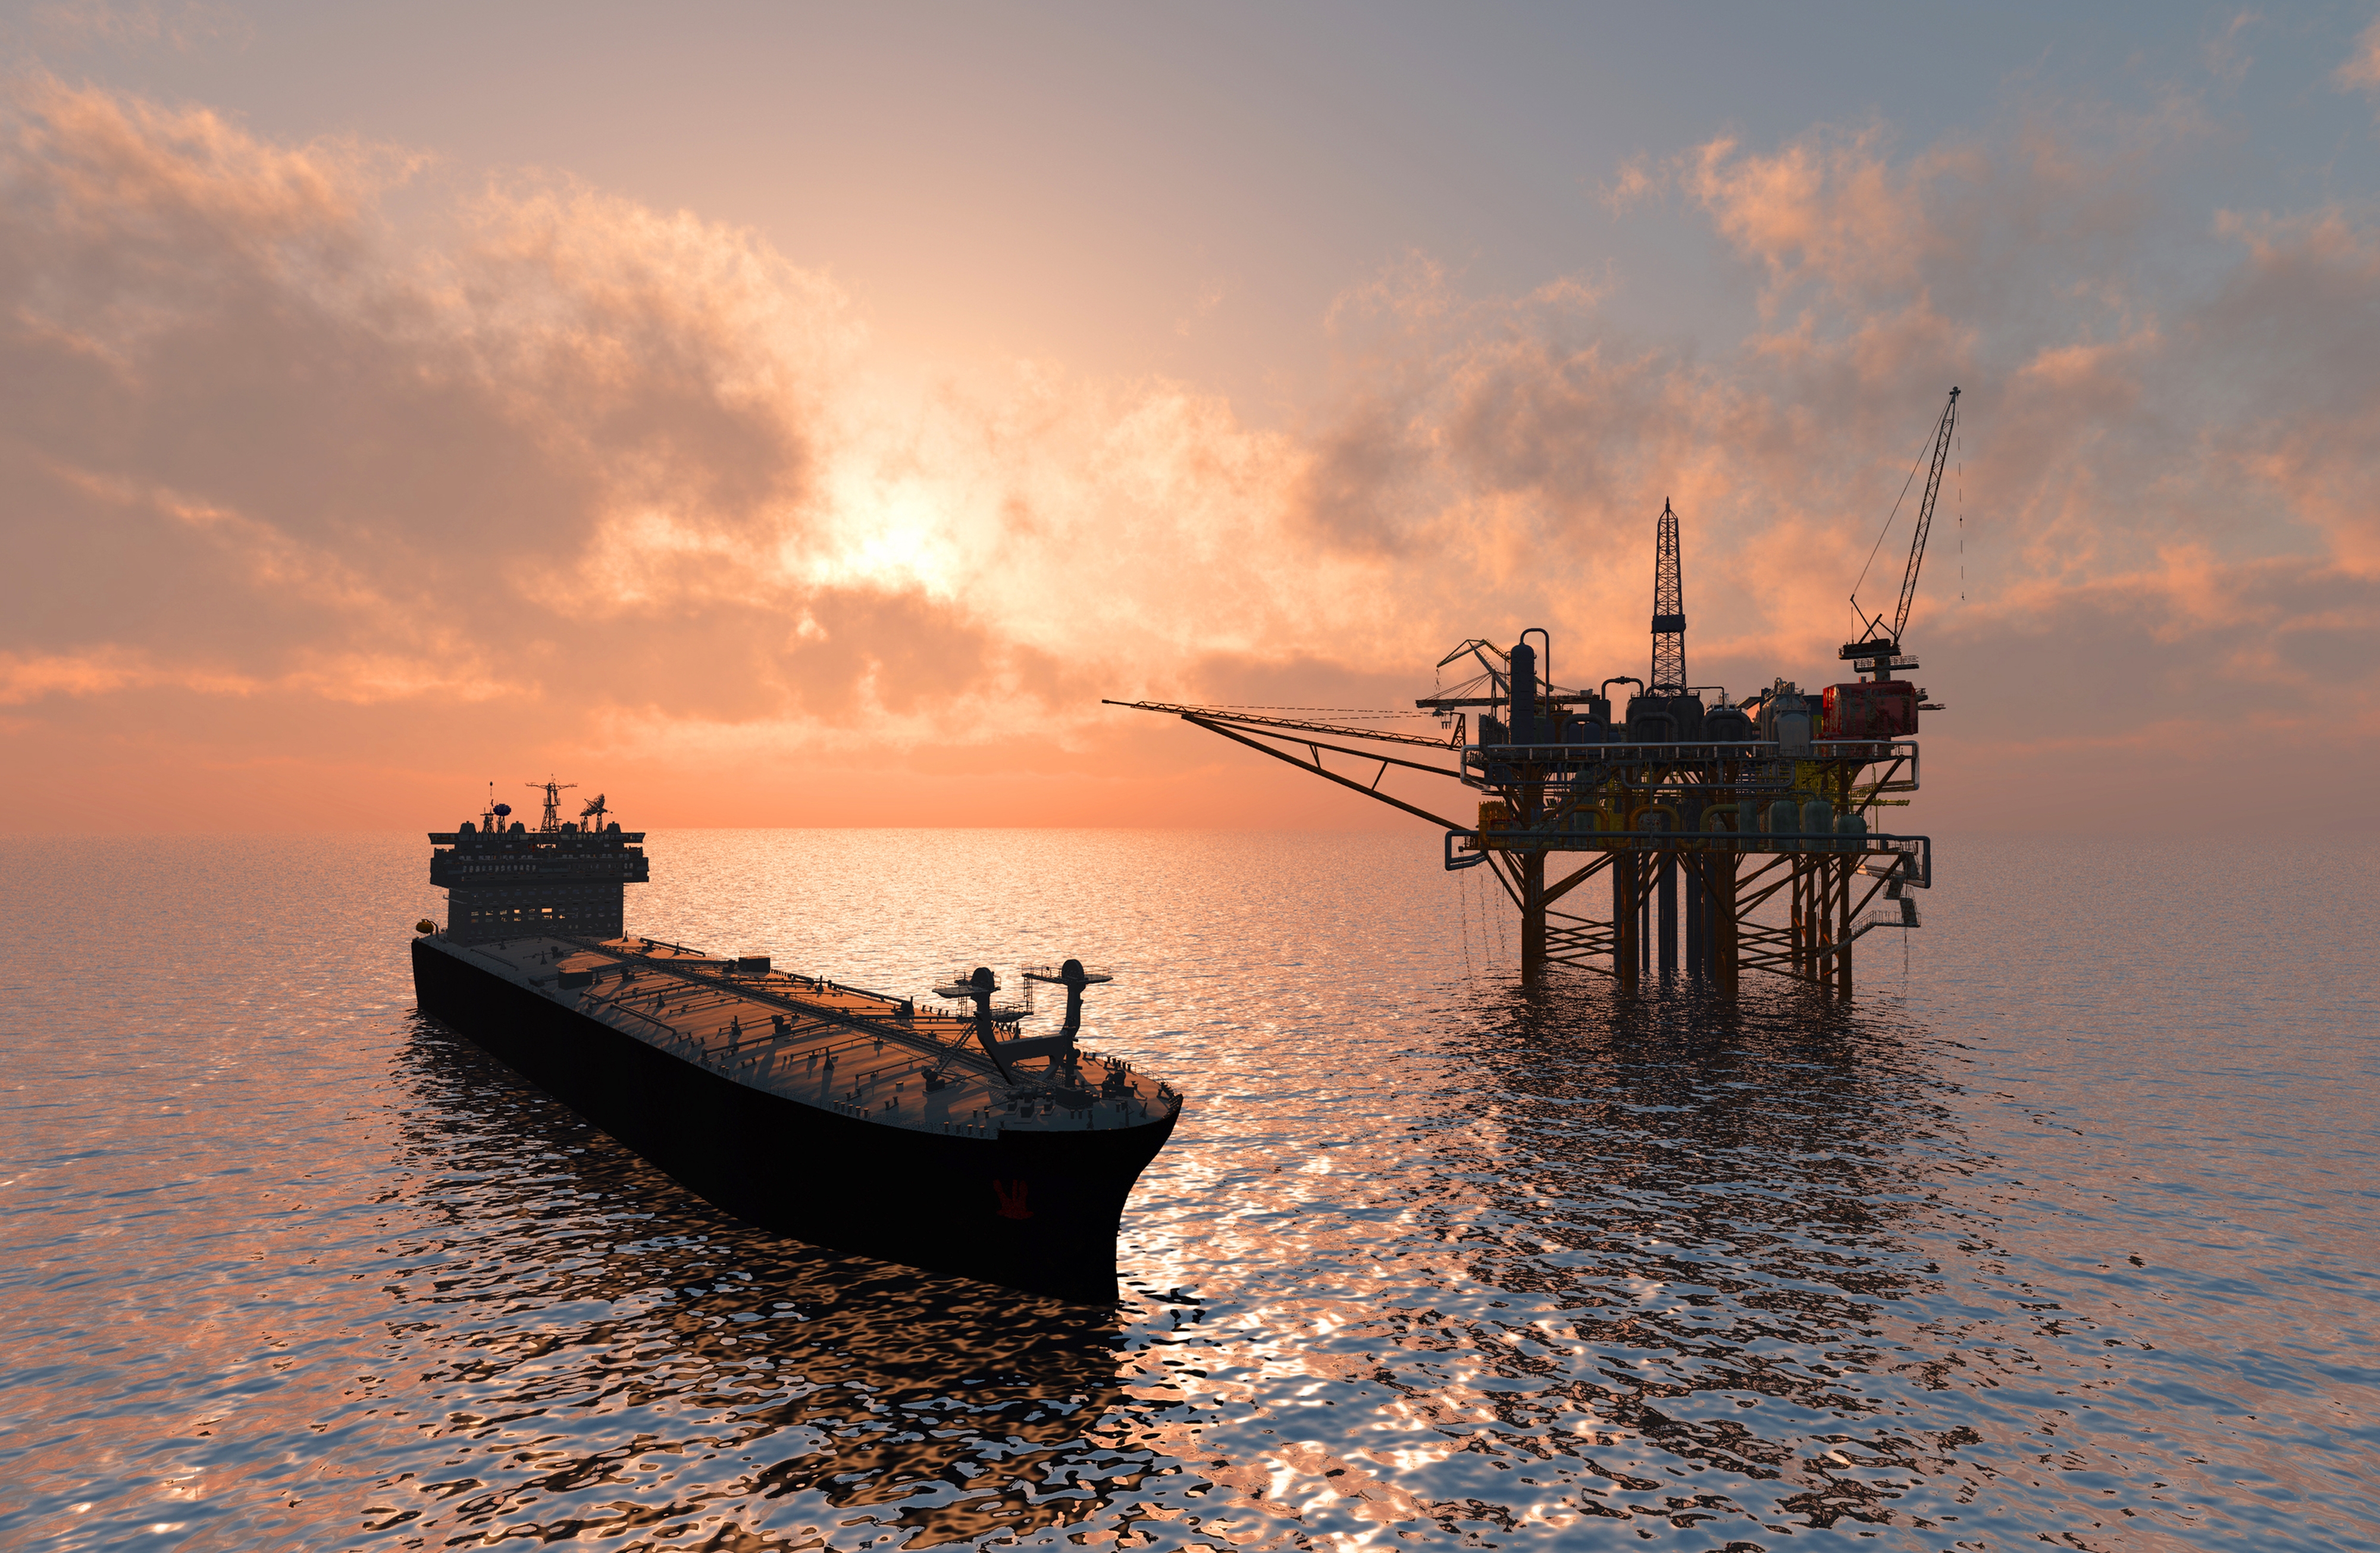 Добыча судов. Нефтяной танкер Pegas. Морская добыча нефти. Нефтяная платформа. Нефтяная вышка в море.